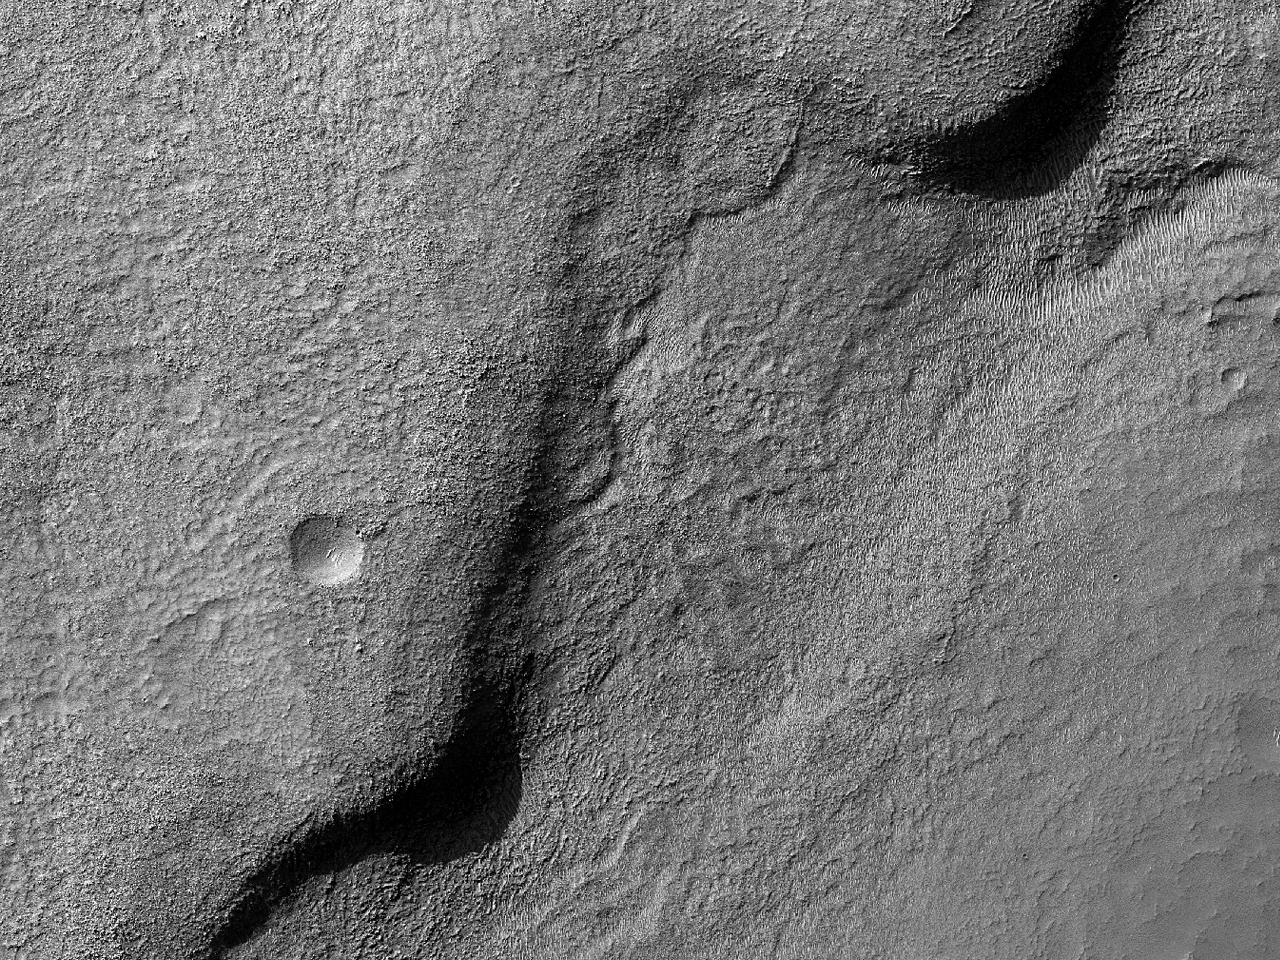 Güney orta-enleminde yer alan bir kraterin tabanındaki katmanlar